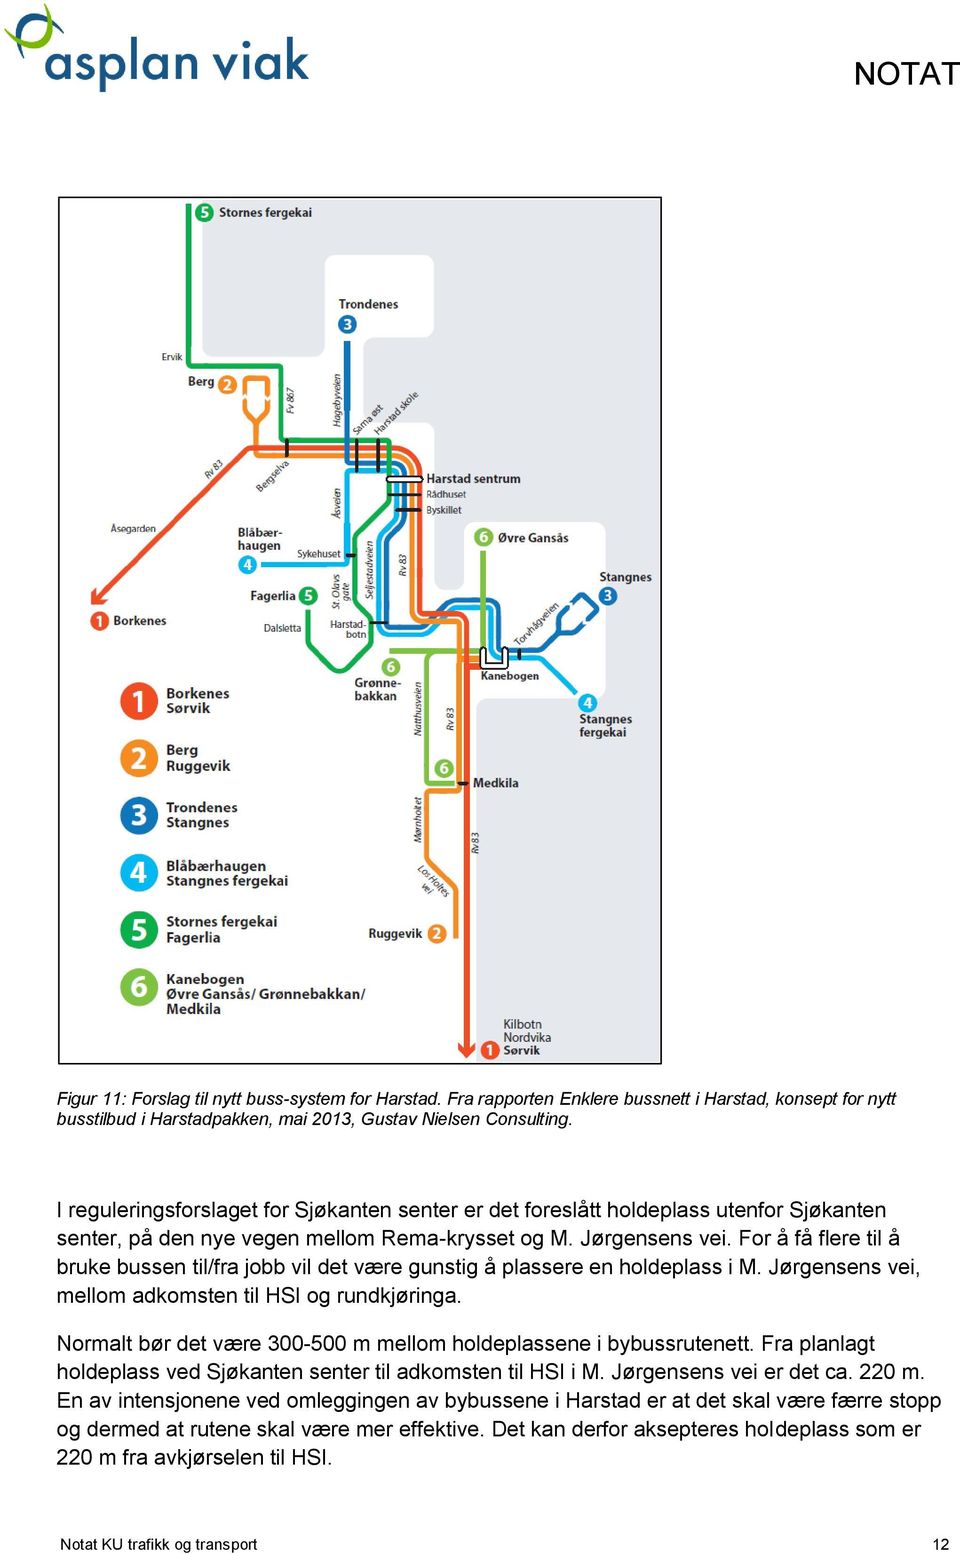 For å få flere til å bruke bussen til/fra jobb vil det være gunstig å plassere en holdeplass i M. Jørgensens vei, mellom adkomsten til HSI og rundkjøringa.